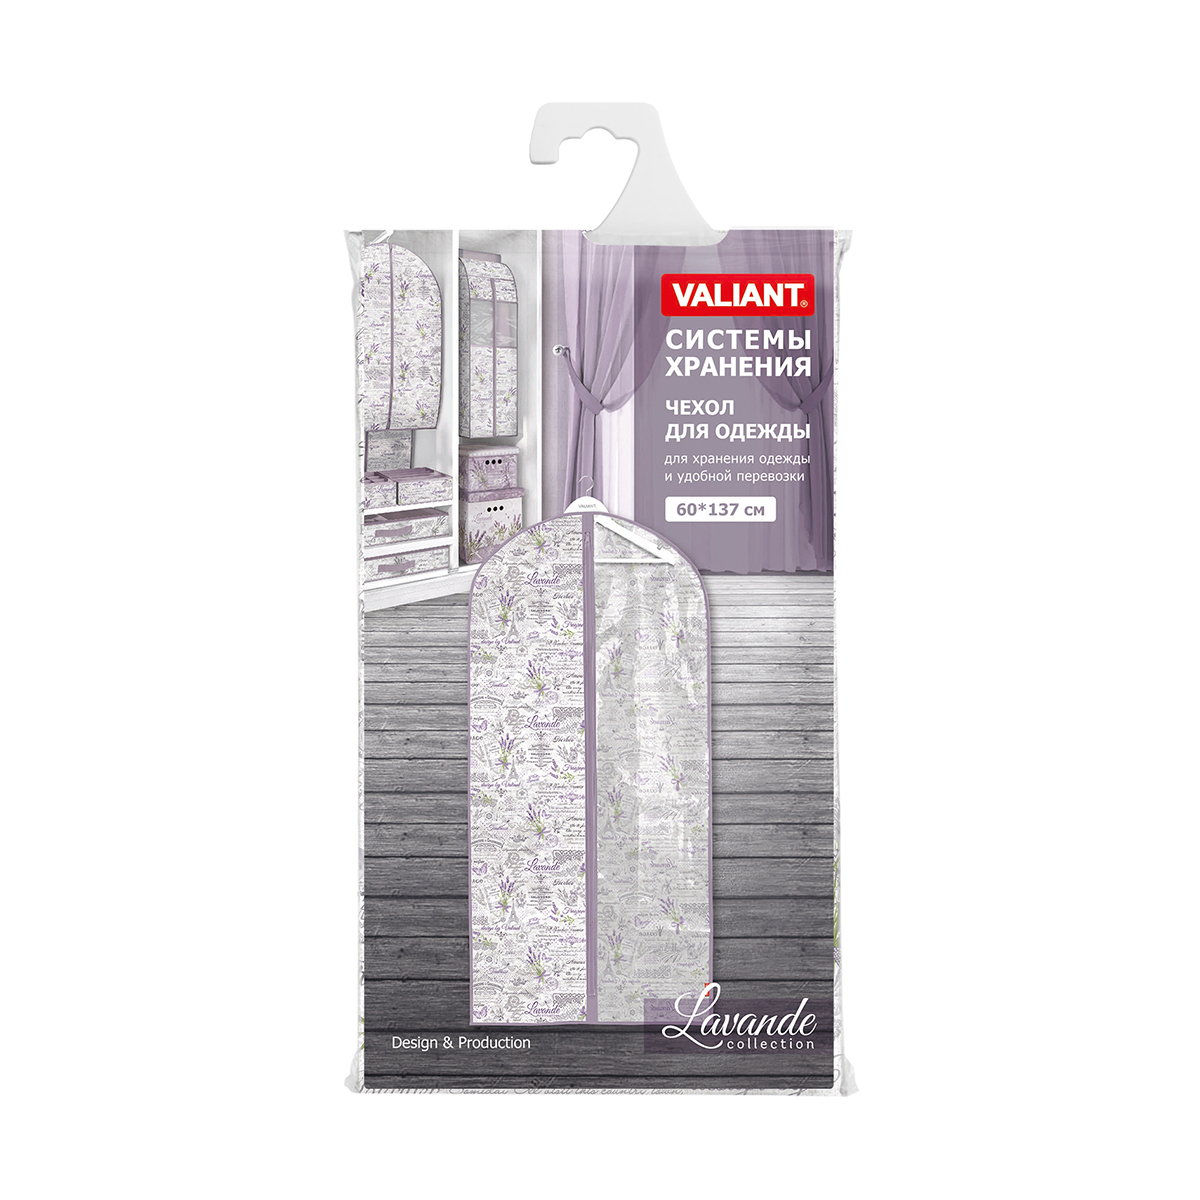 Чехол для одежды "lavande" 60*137 см  с прозрачной вставкой (1/24) "valiant" lv-cw-137